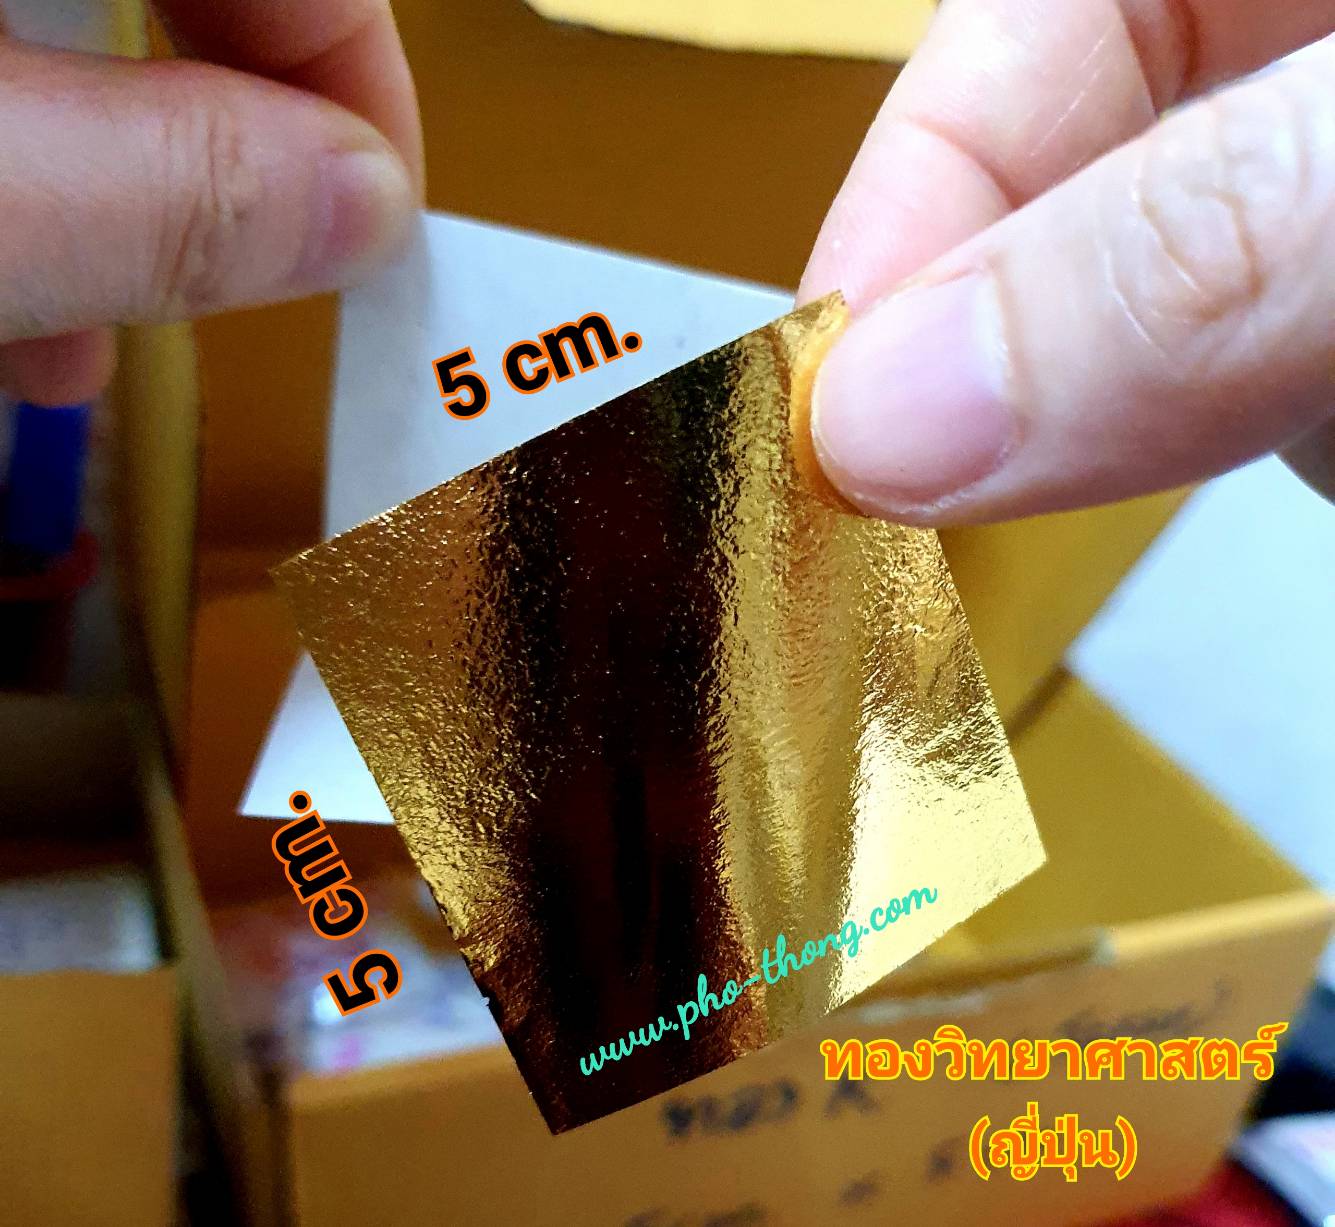 แผ่นทอง แผ่นทองคำเปลว ทองคำเปลว ทองวิทยาศาสตร์ ทองญี่ปุ่น (จากประเทศญี่ปุ่น) ราคาถูก ขนาด 5cm. X 5cm. (ขนาดจัมโบ้) ฝังลูกนิมิต ติดพระ ตกแต่ง